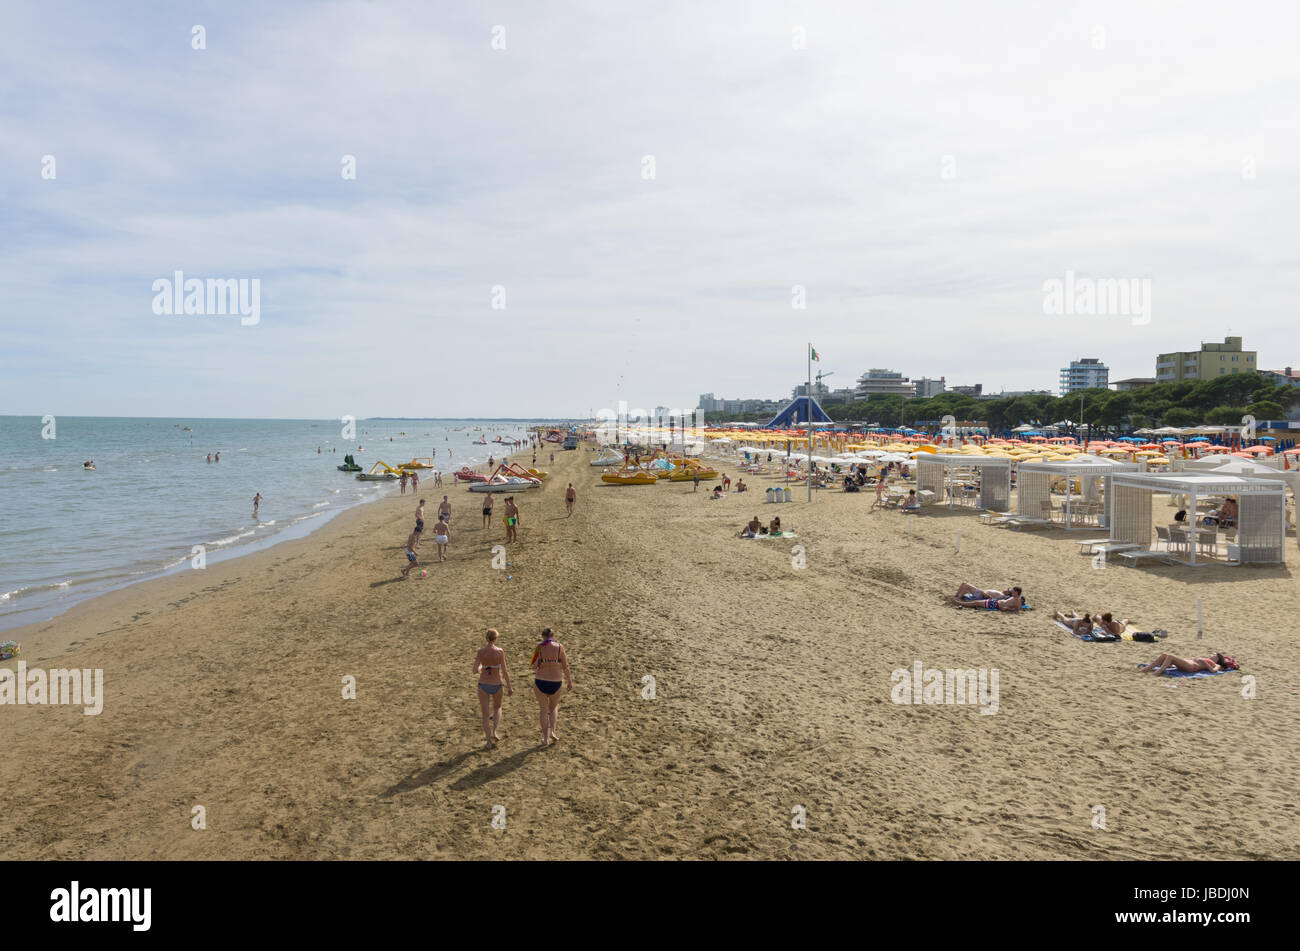 The beach of Lignano Sabbiadoro - Italy (9th June 2017) Stock Photo